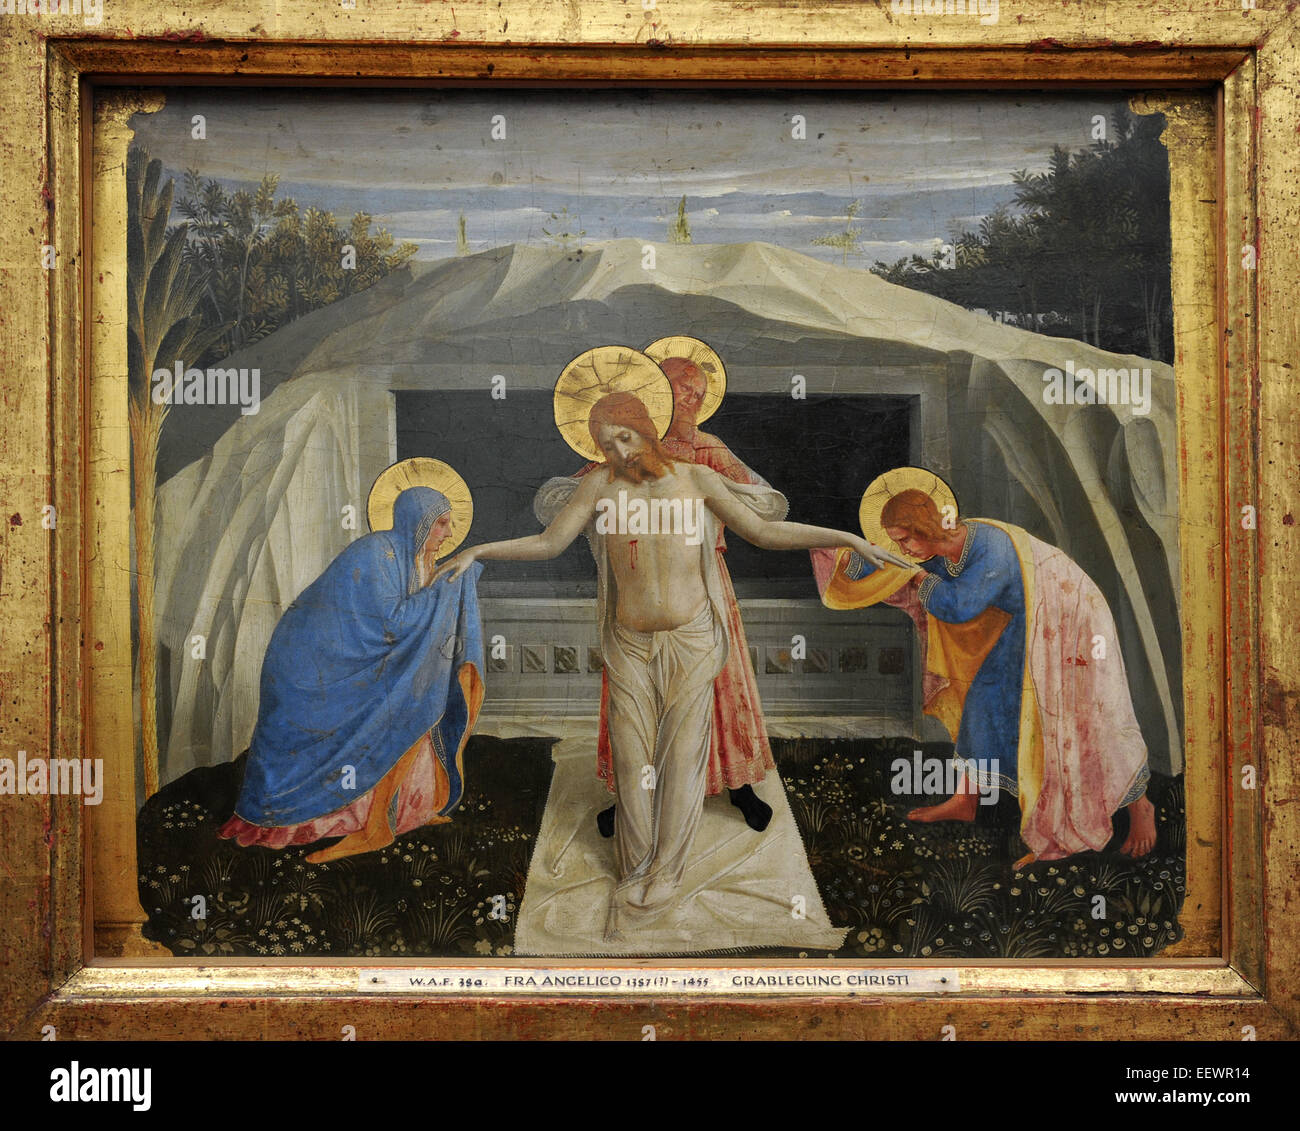 Beato Angelico (1395-1455). Italiano pittore rinascimentale. Sepoltura. Abou 1438-1440. Alte Pinakothek. Monaco di Baviera. Germania. Foto Stock